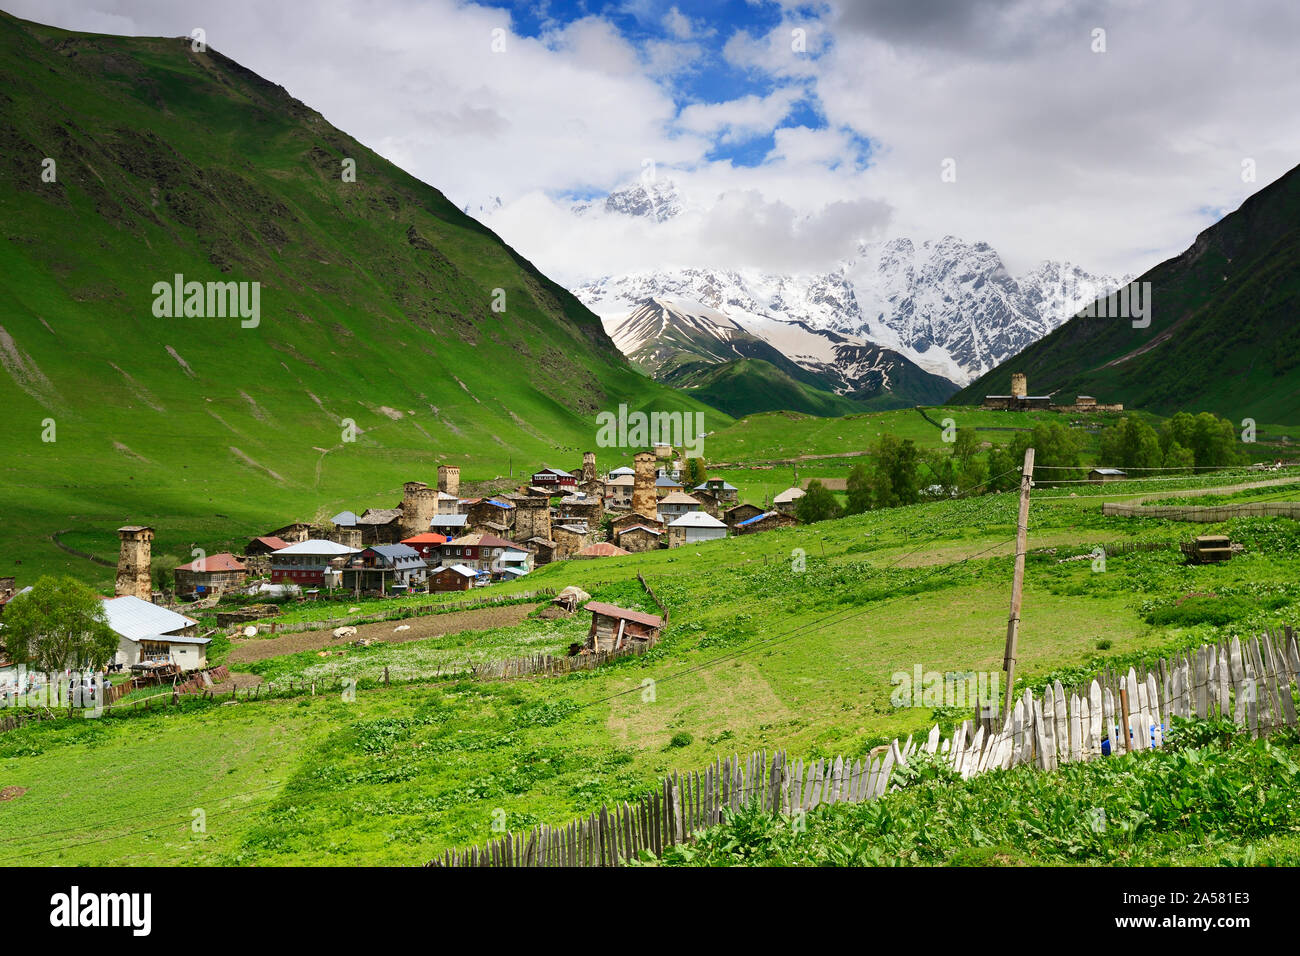 Le village de montagne d'Ushguli avec le pic Shkhara (5068 m) en arrière-plan. Site du patrimoine mondial de l'UNESCO. La Svanétie, Géorgie. Caucase Banque D'Images